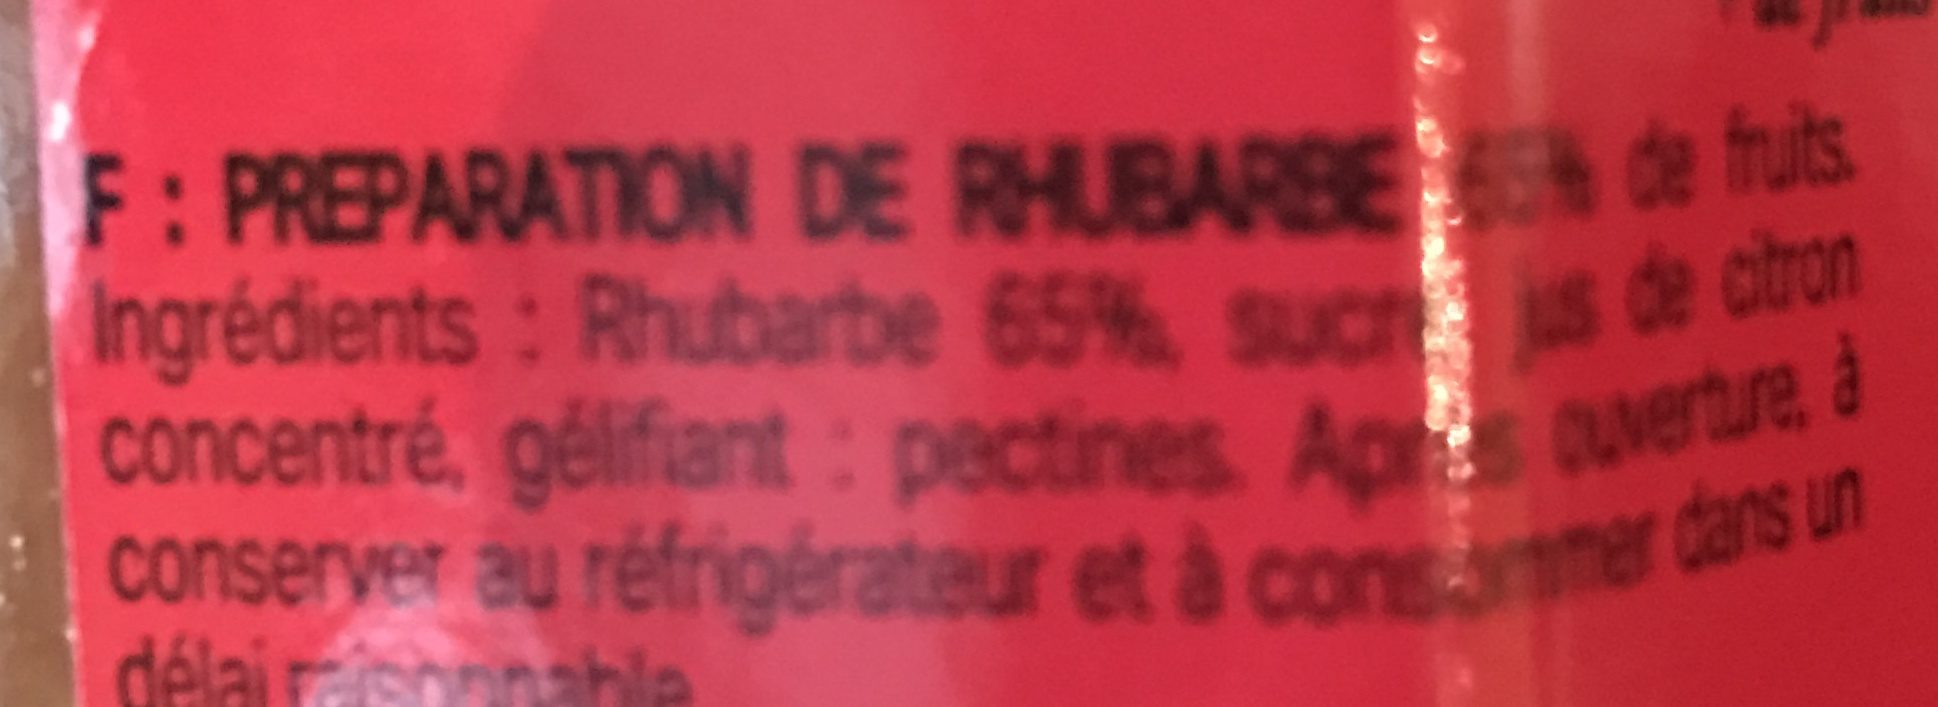 Rhubarbe cuite au chaudron - Ingredients - fr